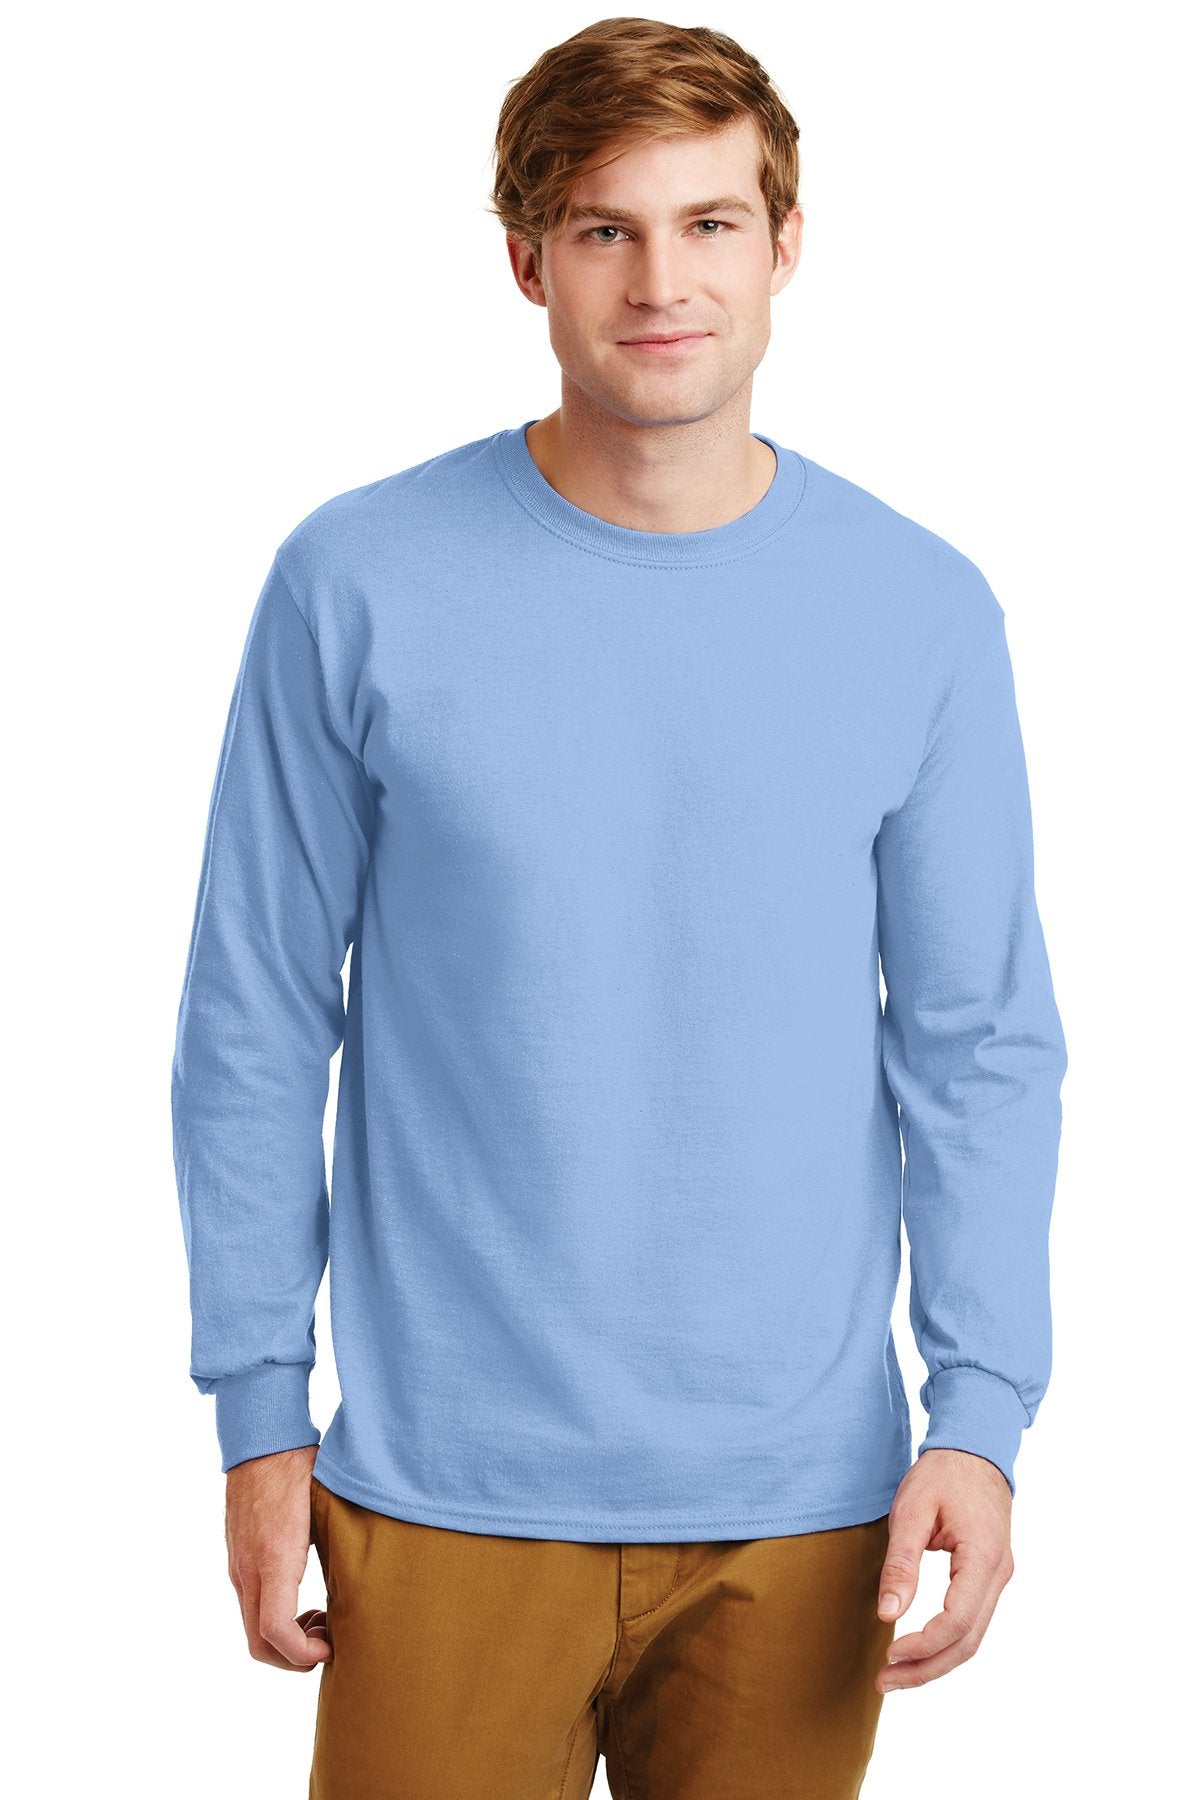 gildan ultra cotton long sleeve t shirt g2400 light blue